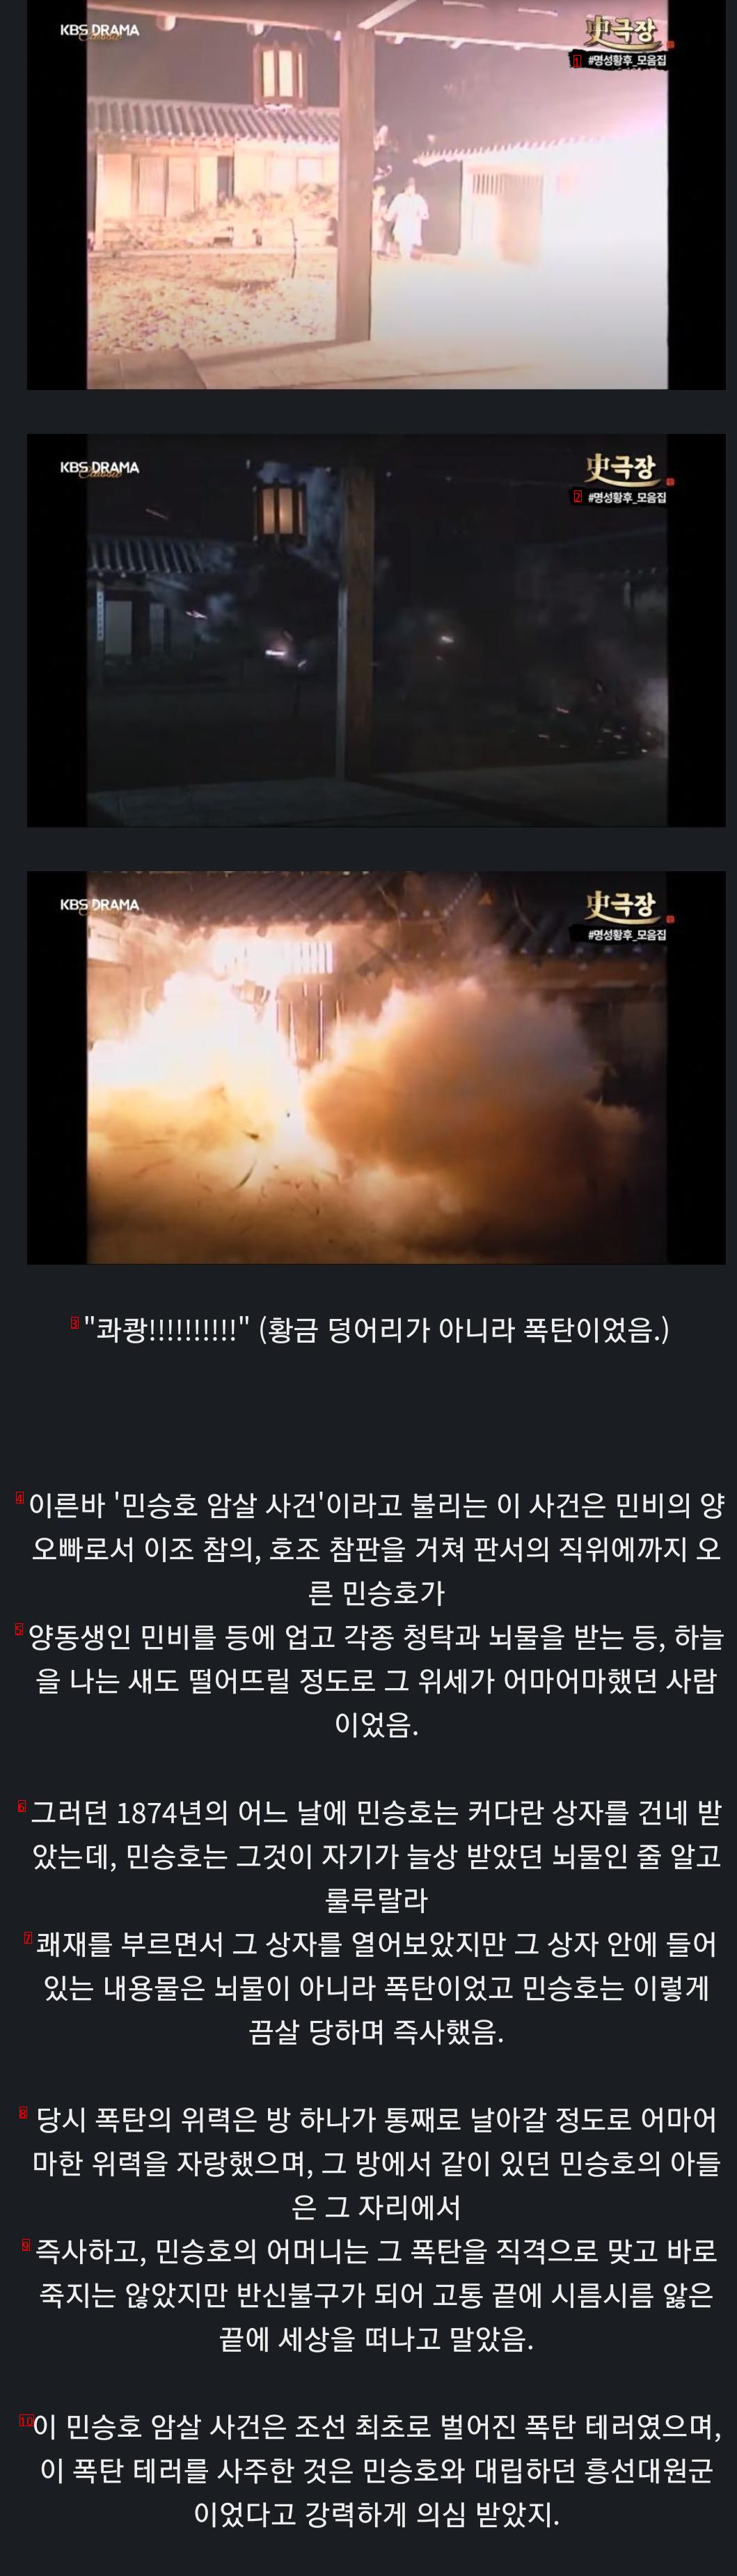 조선 최초의 폭탄 테러